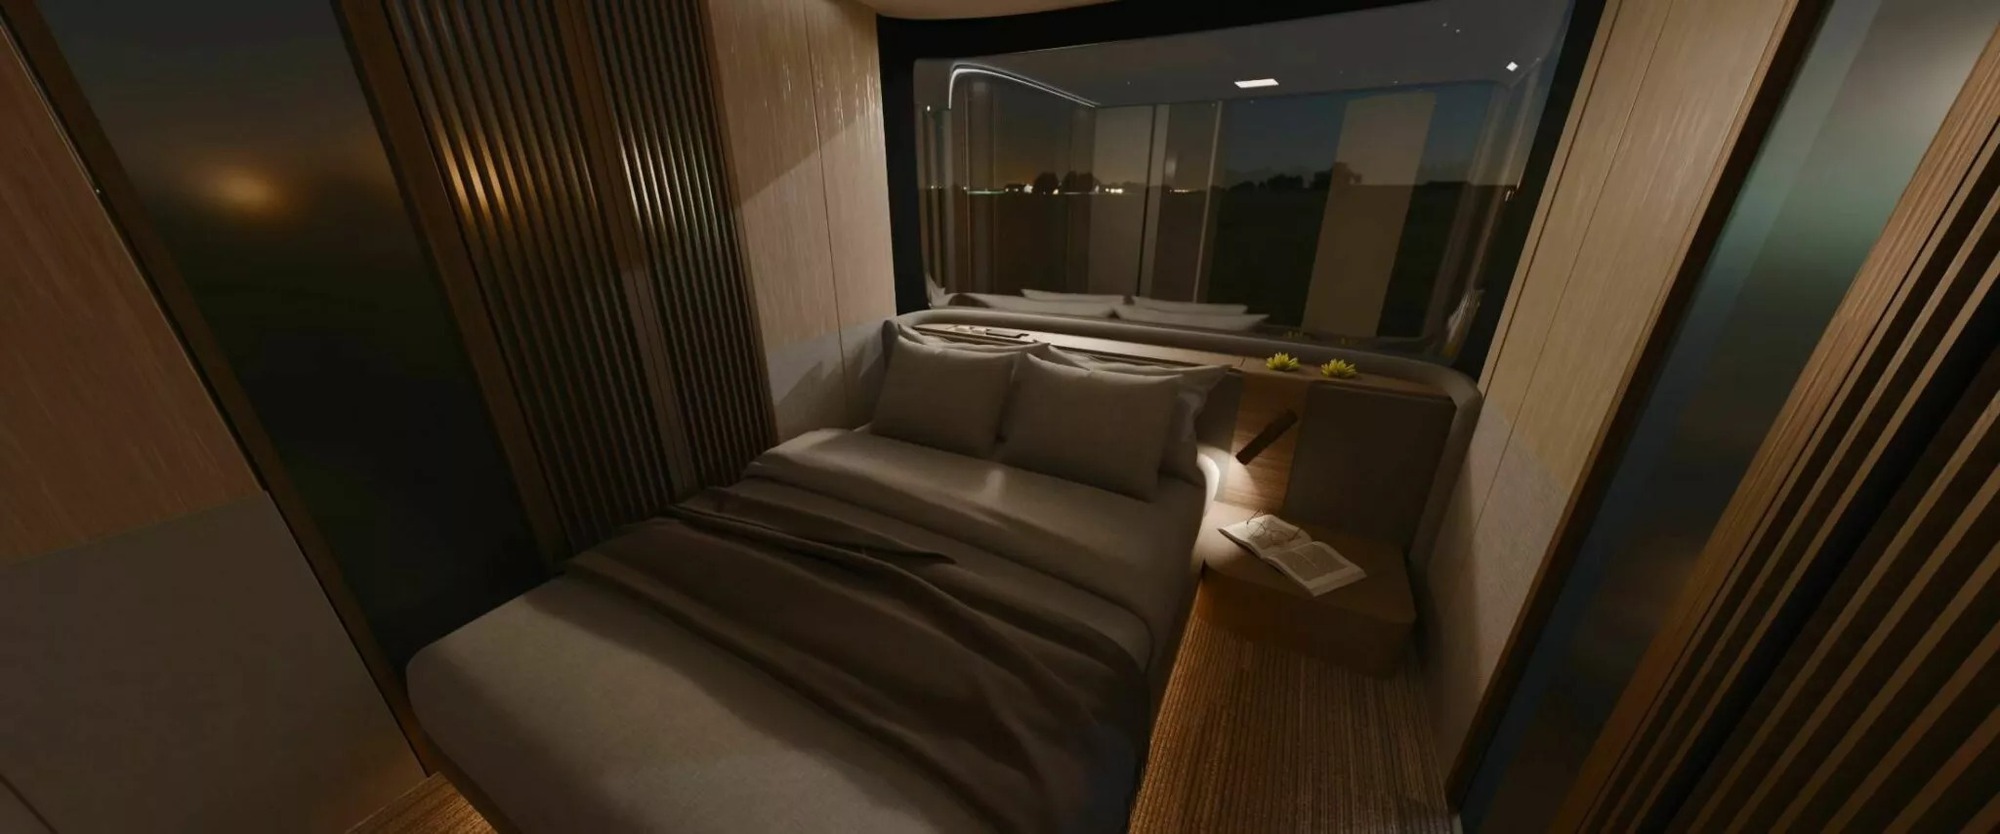 Hãng Ý thiết kế xe cho VinFast hé lộ xe mới có nội thất như chung cư: Đủ các phòng cơ bản với phong cách sang xịn - Ảnh 11.